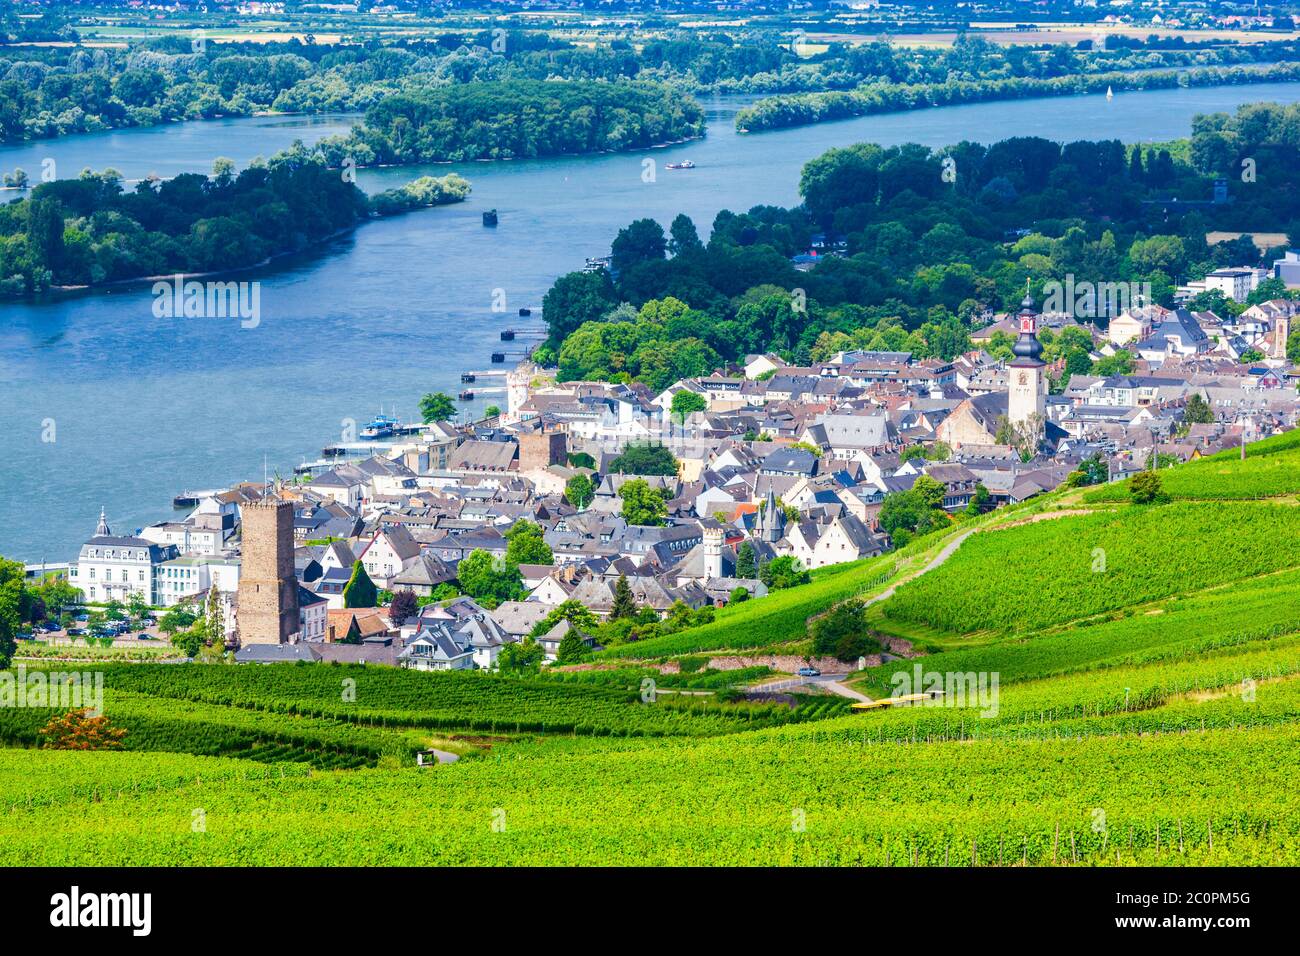 Vignes, Rudesheim am Rhein et Bingen am Rhein ville vue panoramique aérienne dans la vallée du Rhin, Allemagne Banque D'Images